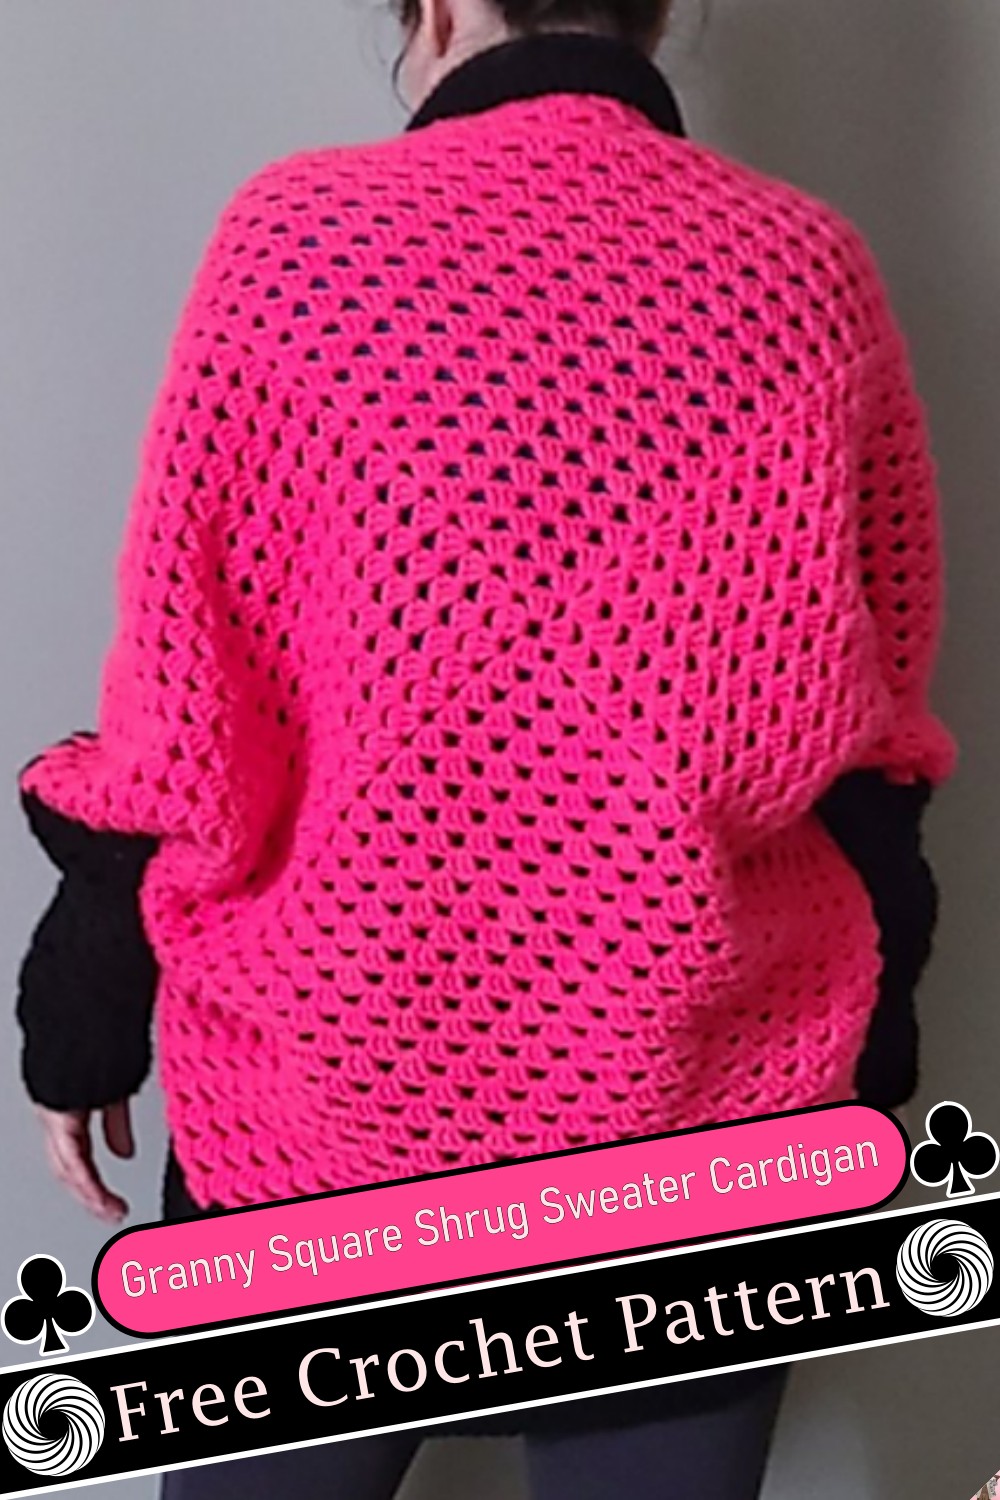 Granny Square Shrug Sweater Cardigan